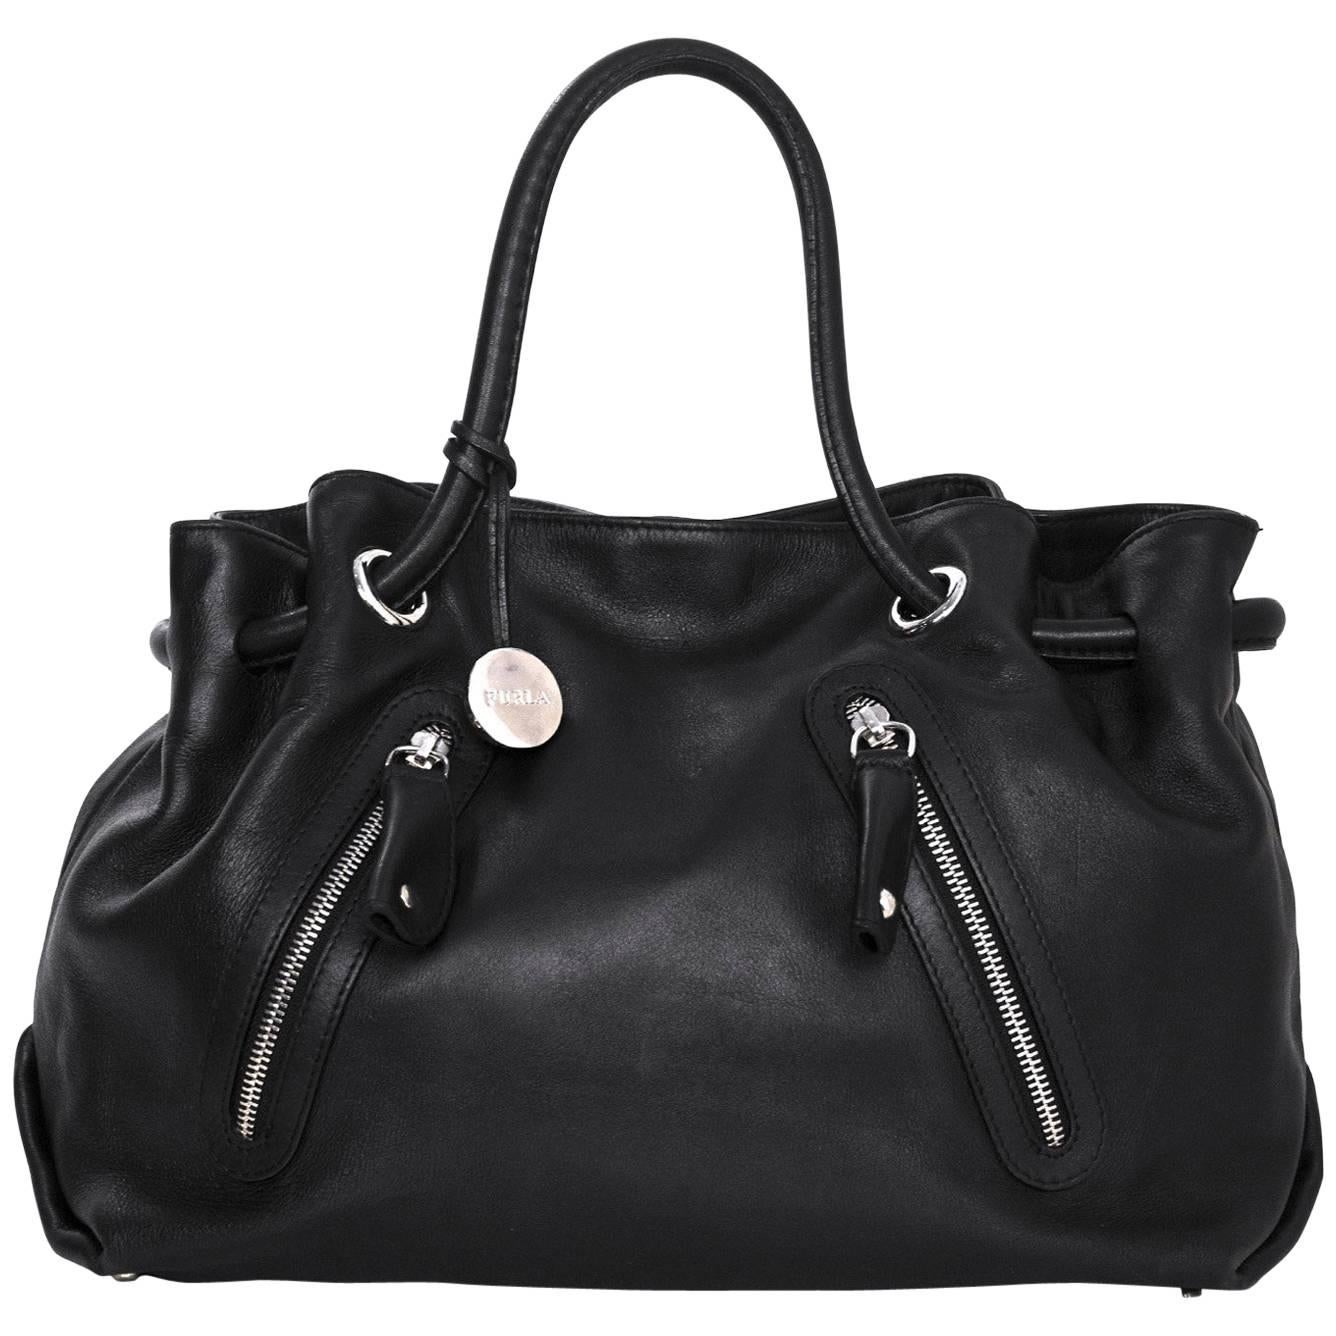 Furla Black Leather Carmen Zip Tote Bag